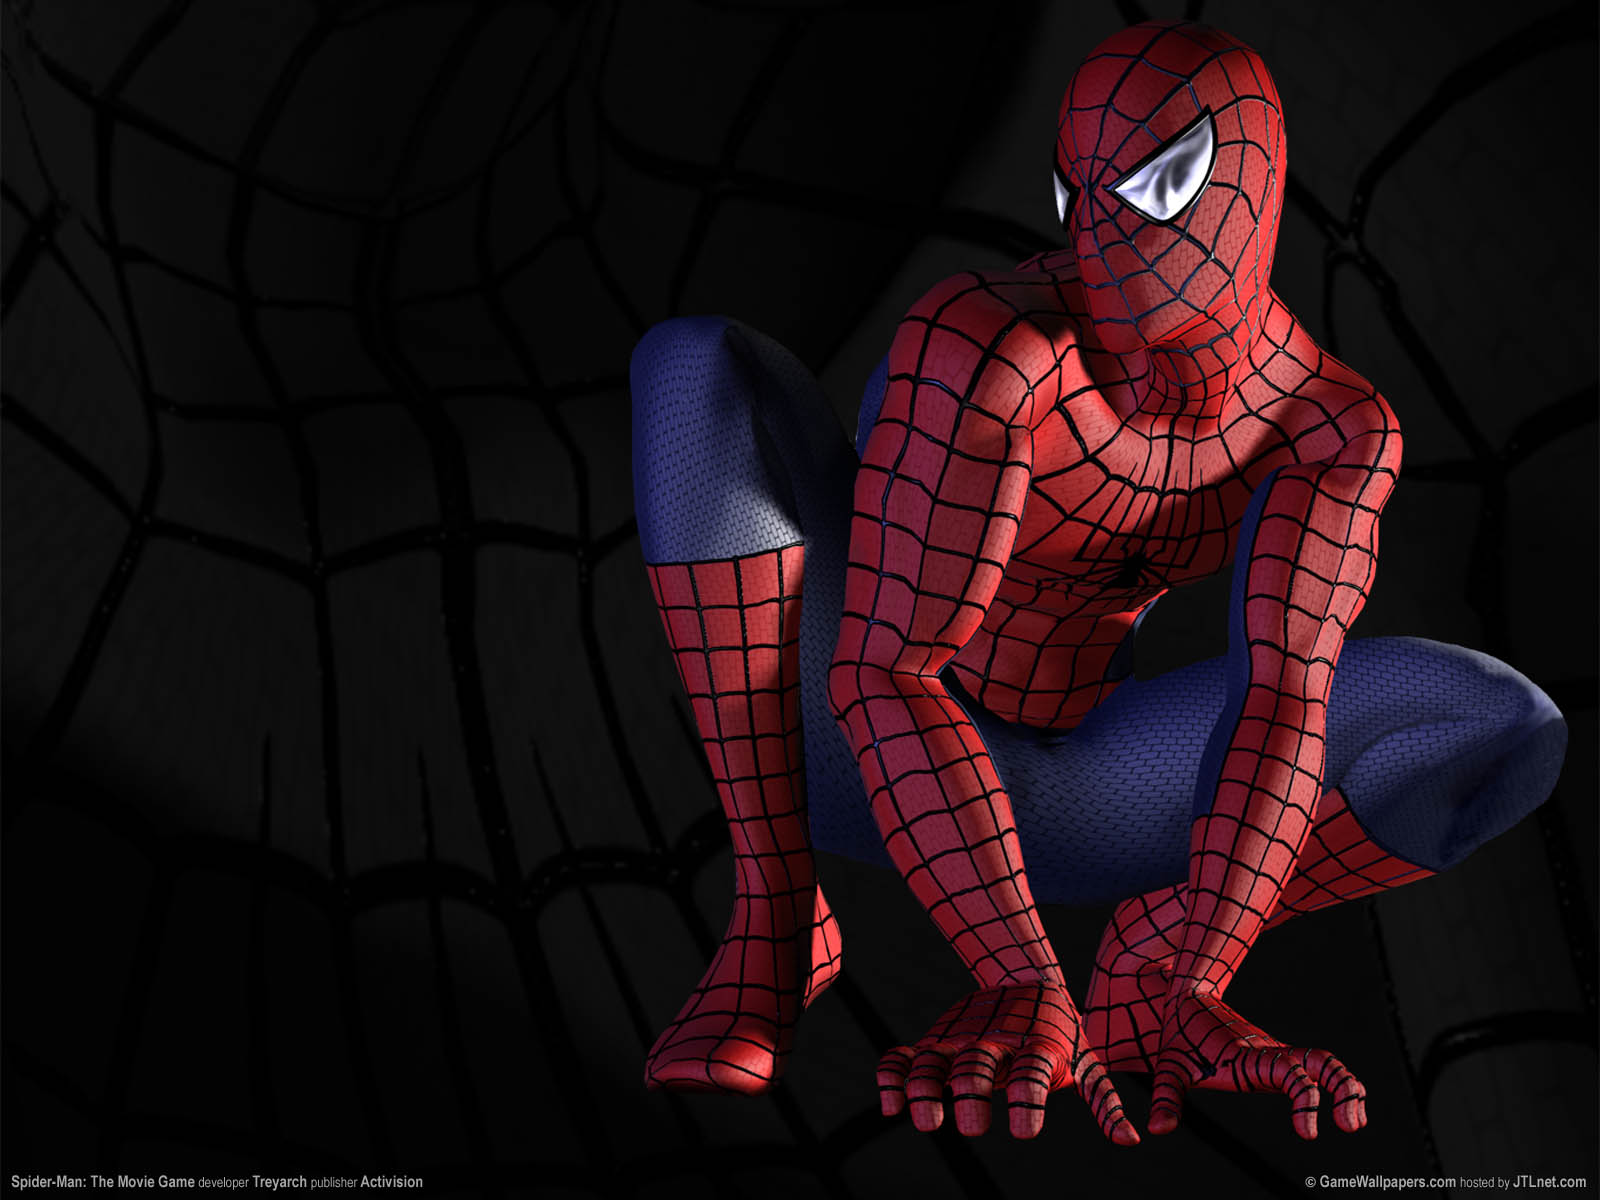 Spider-Man: The Movie Game fond d'cran 01 1600x1200